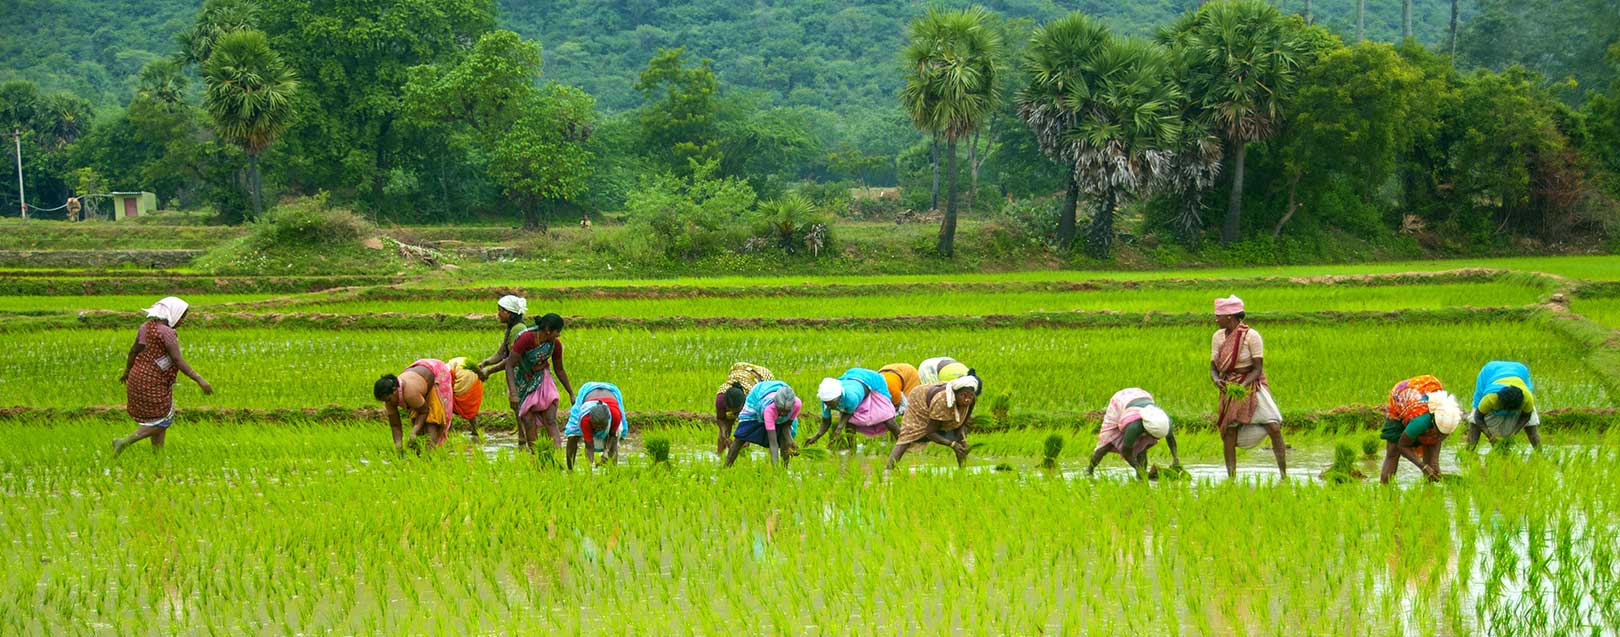 Odisha govt. eyeing heavy paddy procurement to enhance rural economy